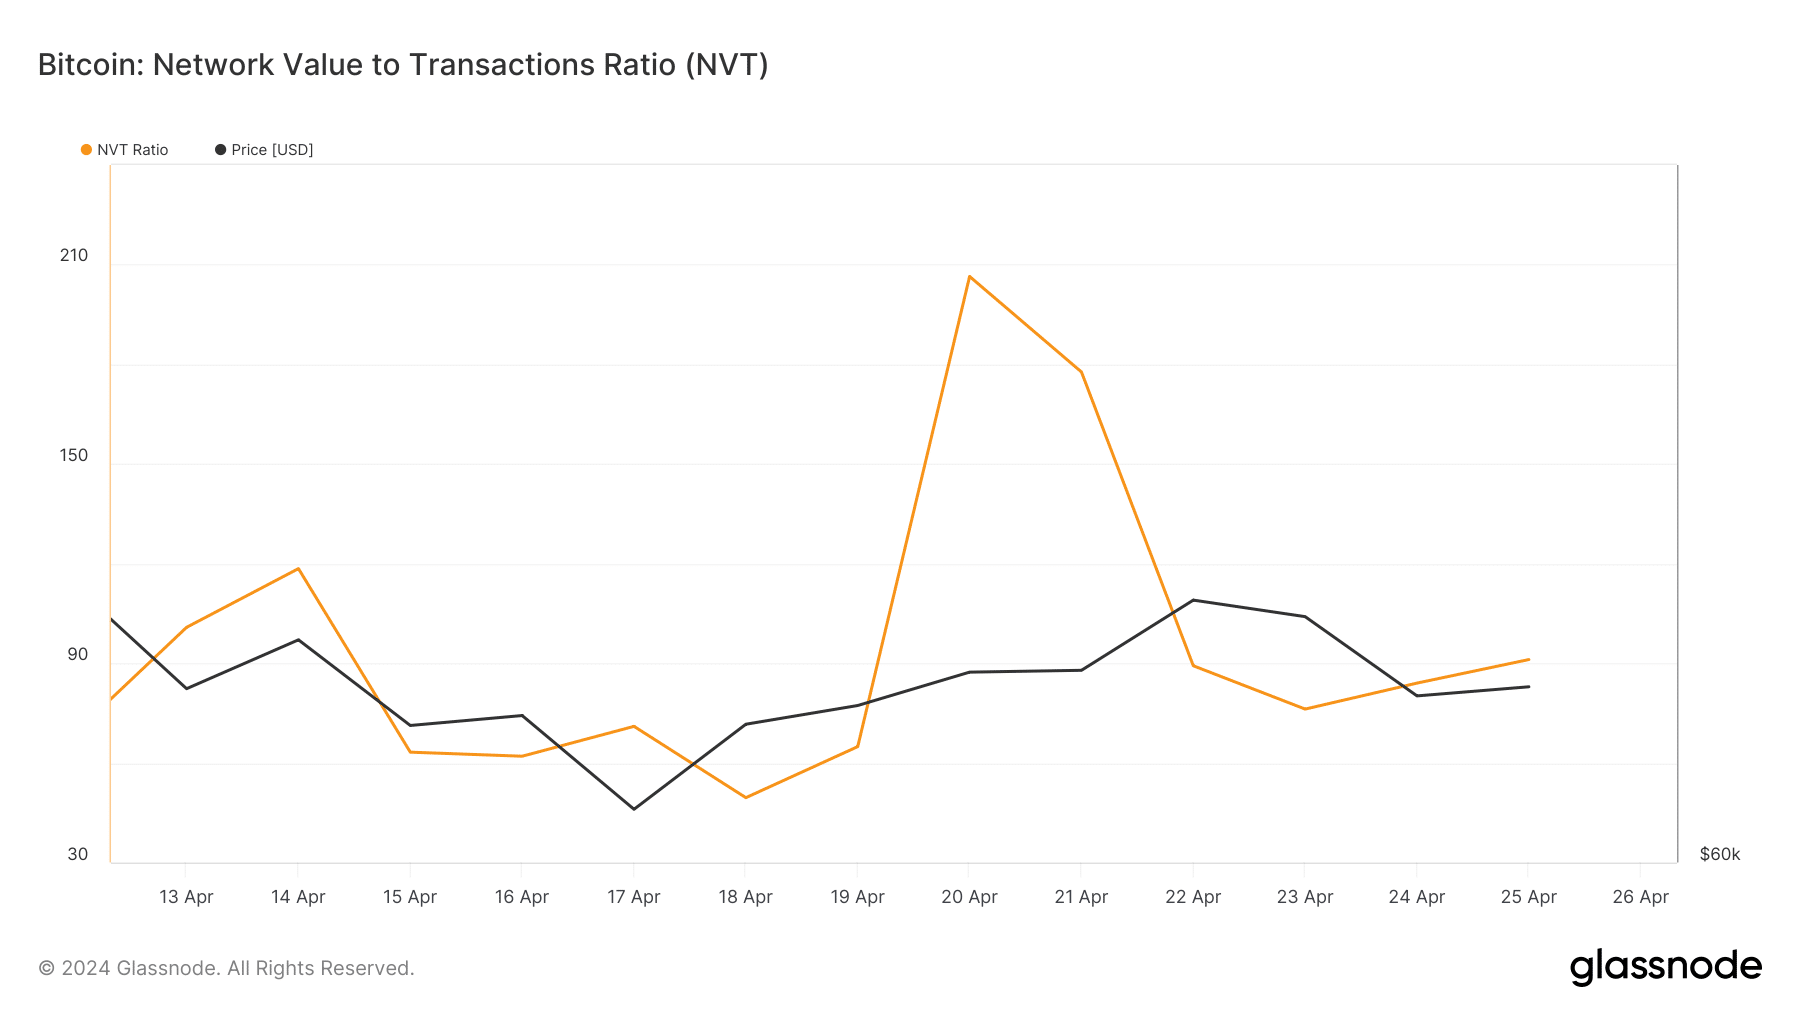 BTC's NVT Ratio dipped